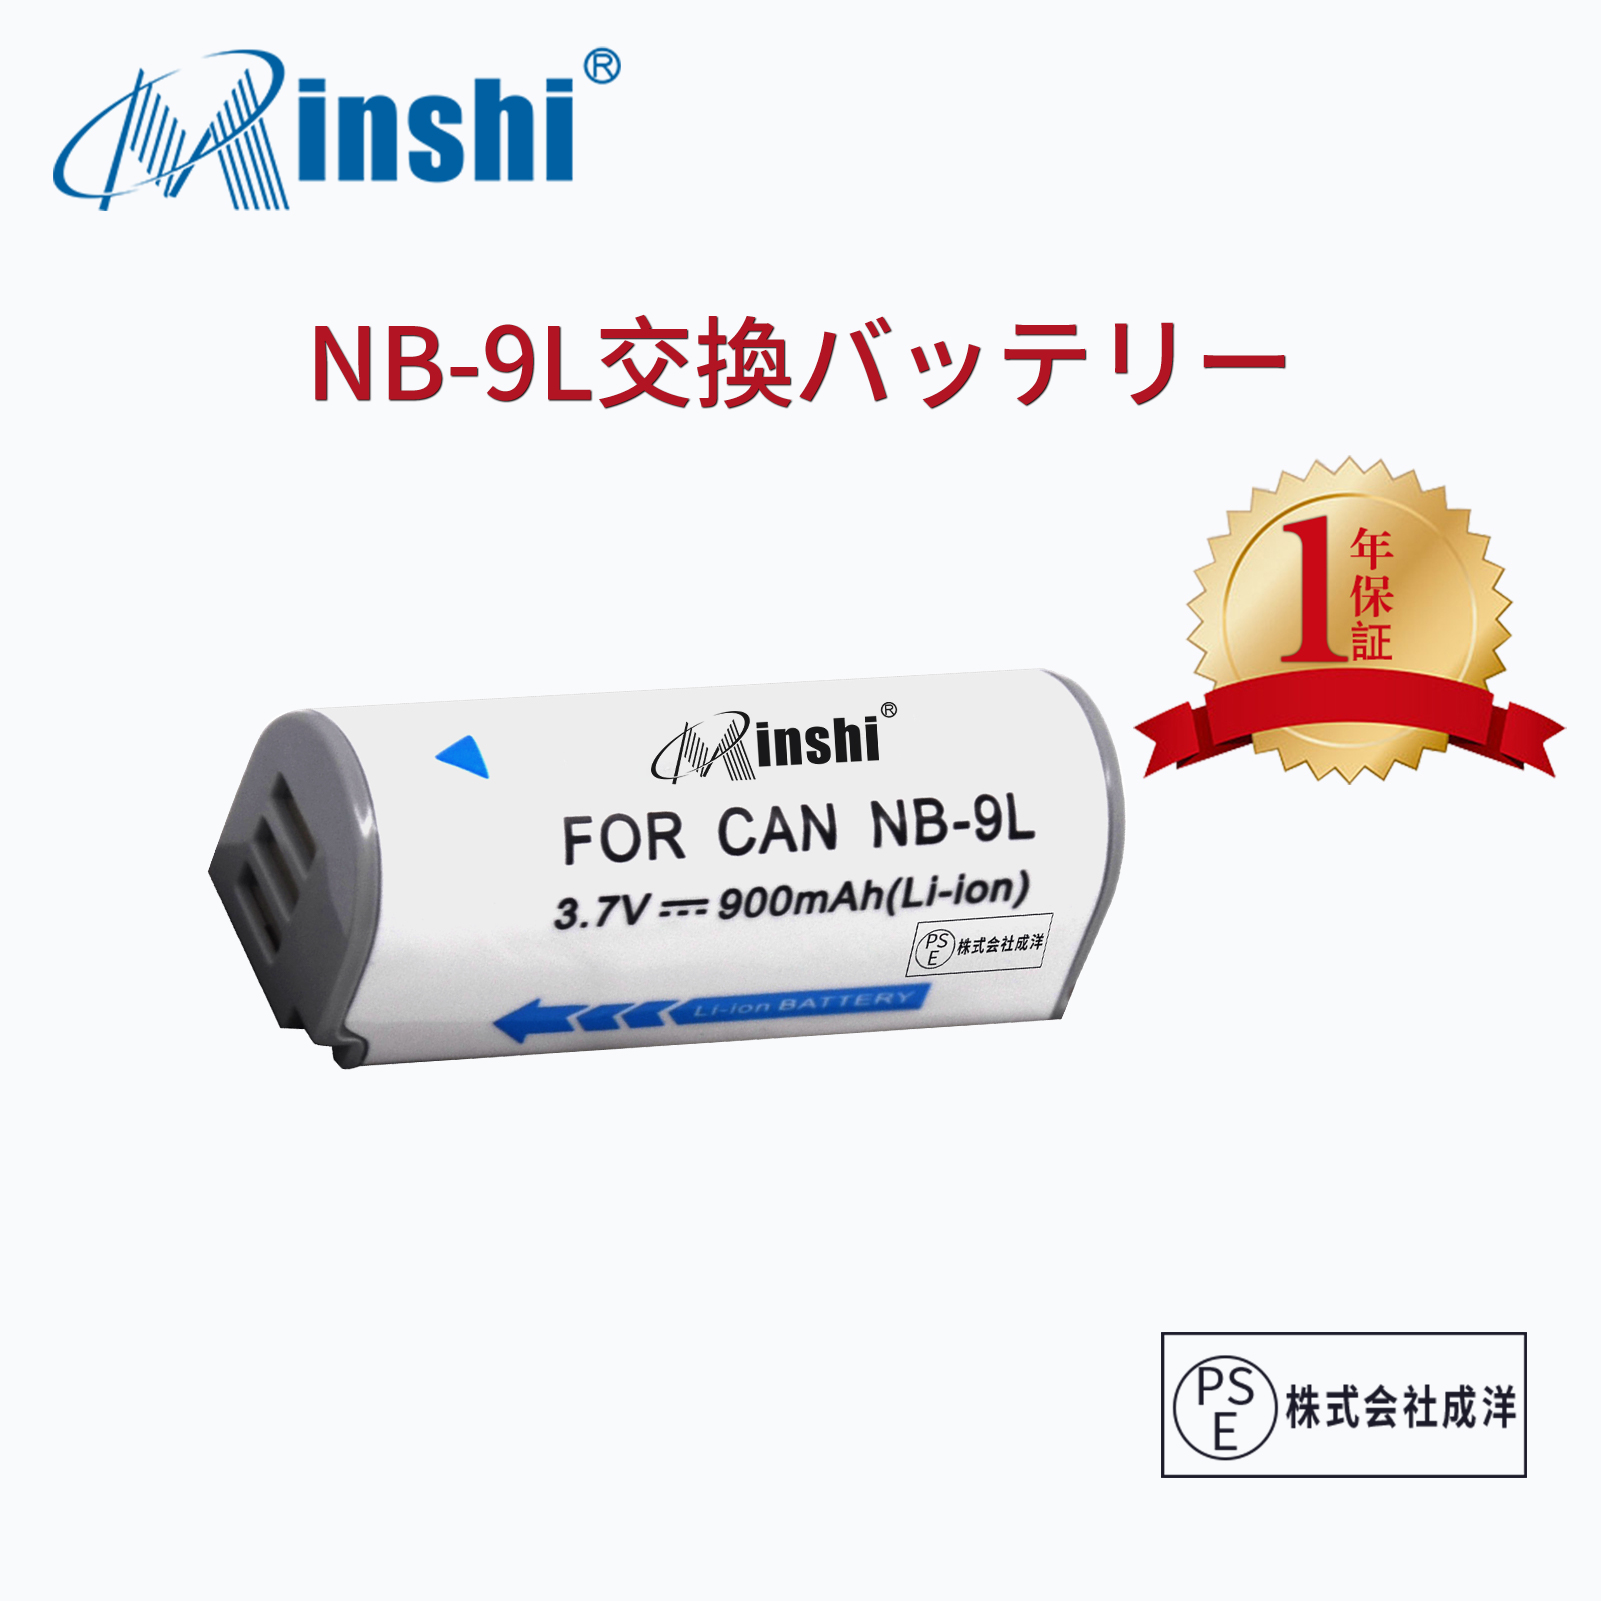 【1年保証】minshi Panasonic NB-9L【900mAh 3.7V】PSE認定済 高品質NB-9L交換用バッテリー